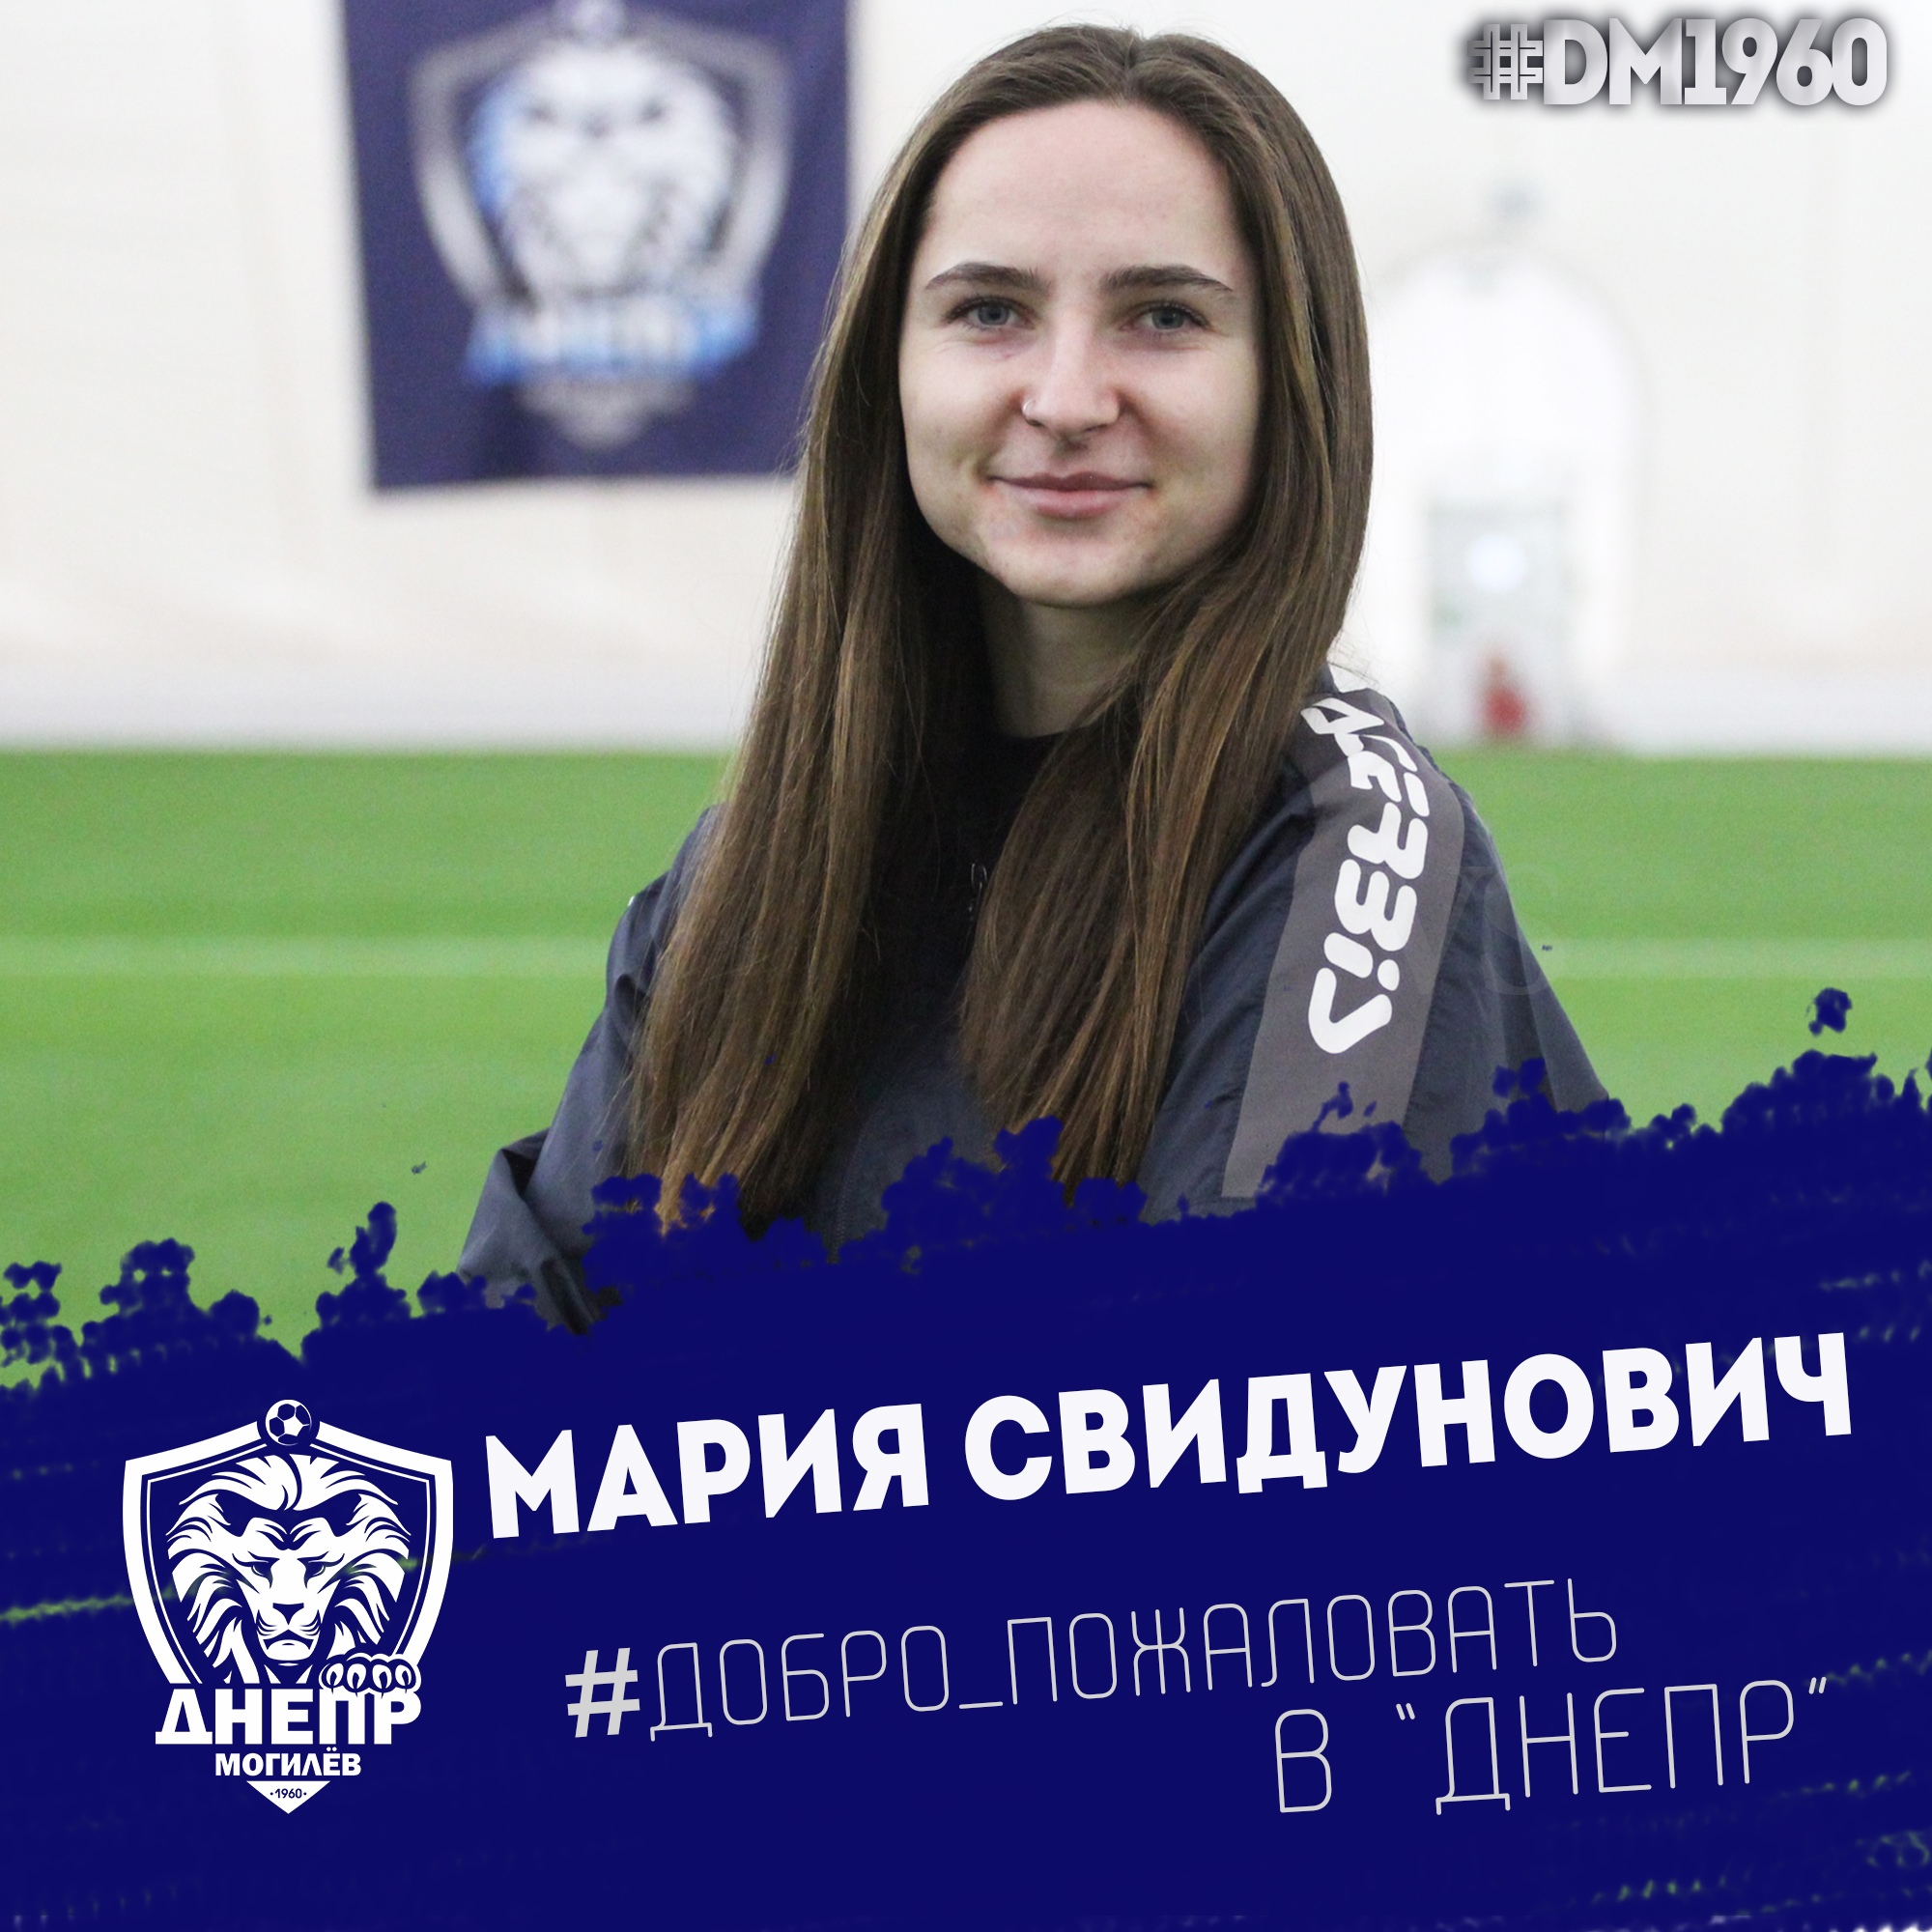 Мария Свидунович - футболистка Днепра